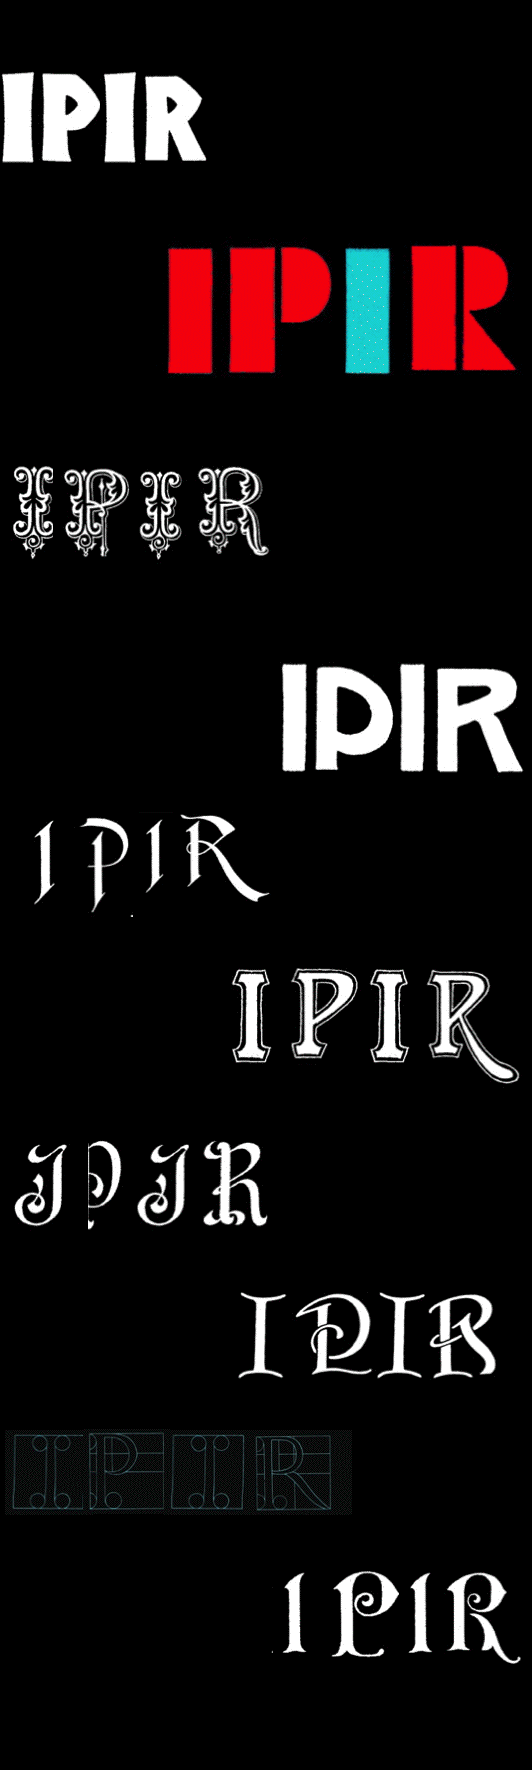 IPIR 2